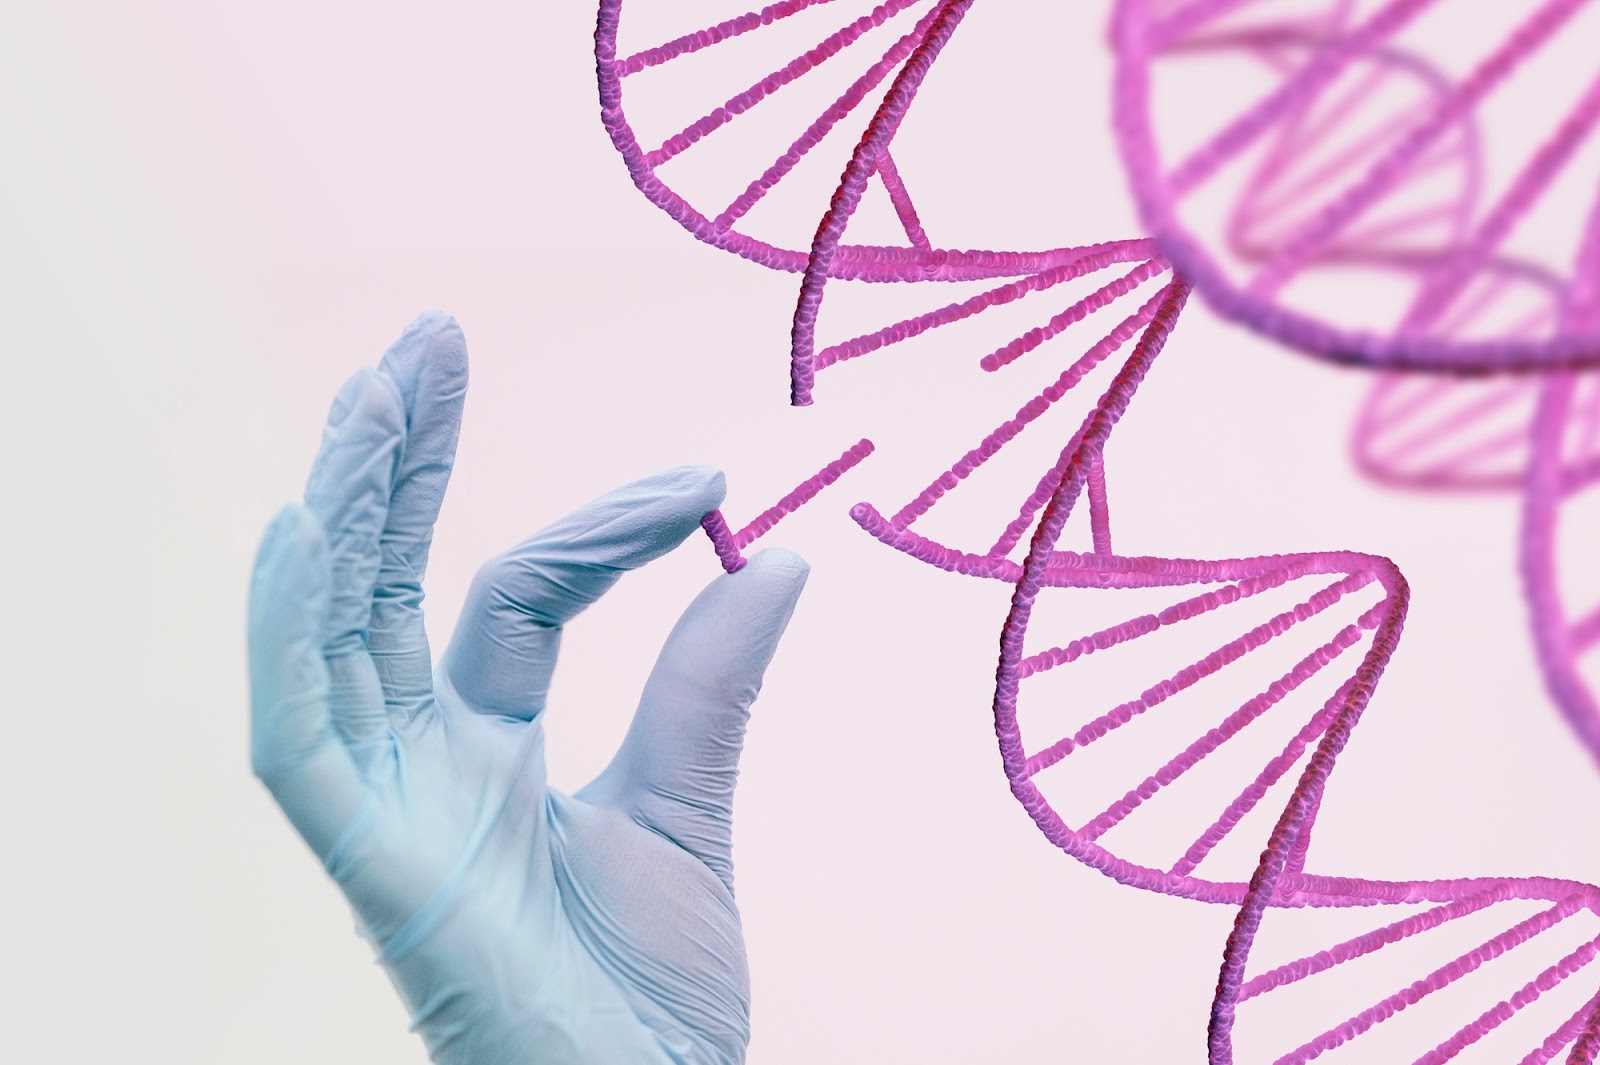 Reprogramación celular biogenética: Avances en la manipulación genética para la salud humana, ejemplos revolucionarios de tecnologías emergentes.